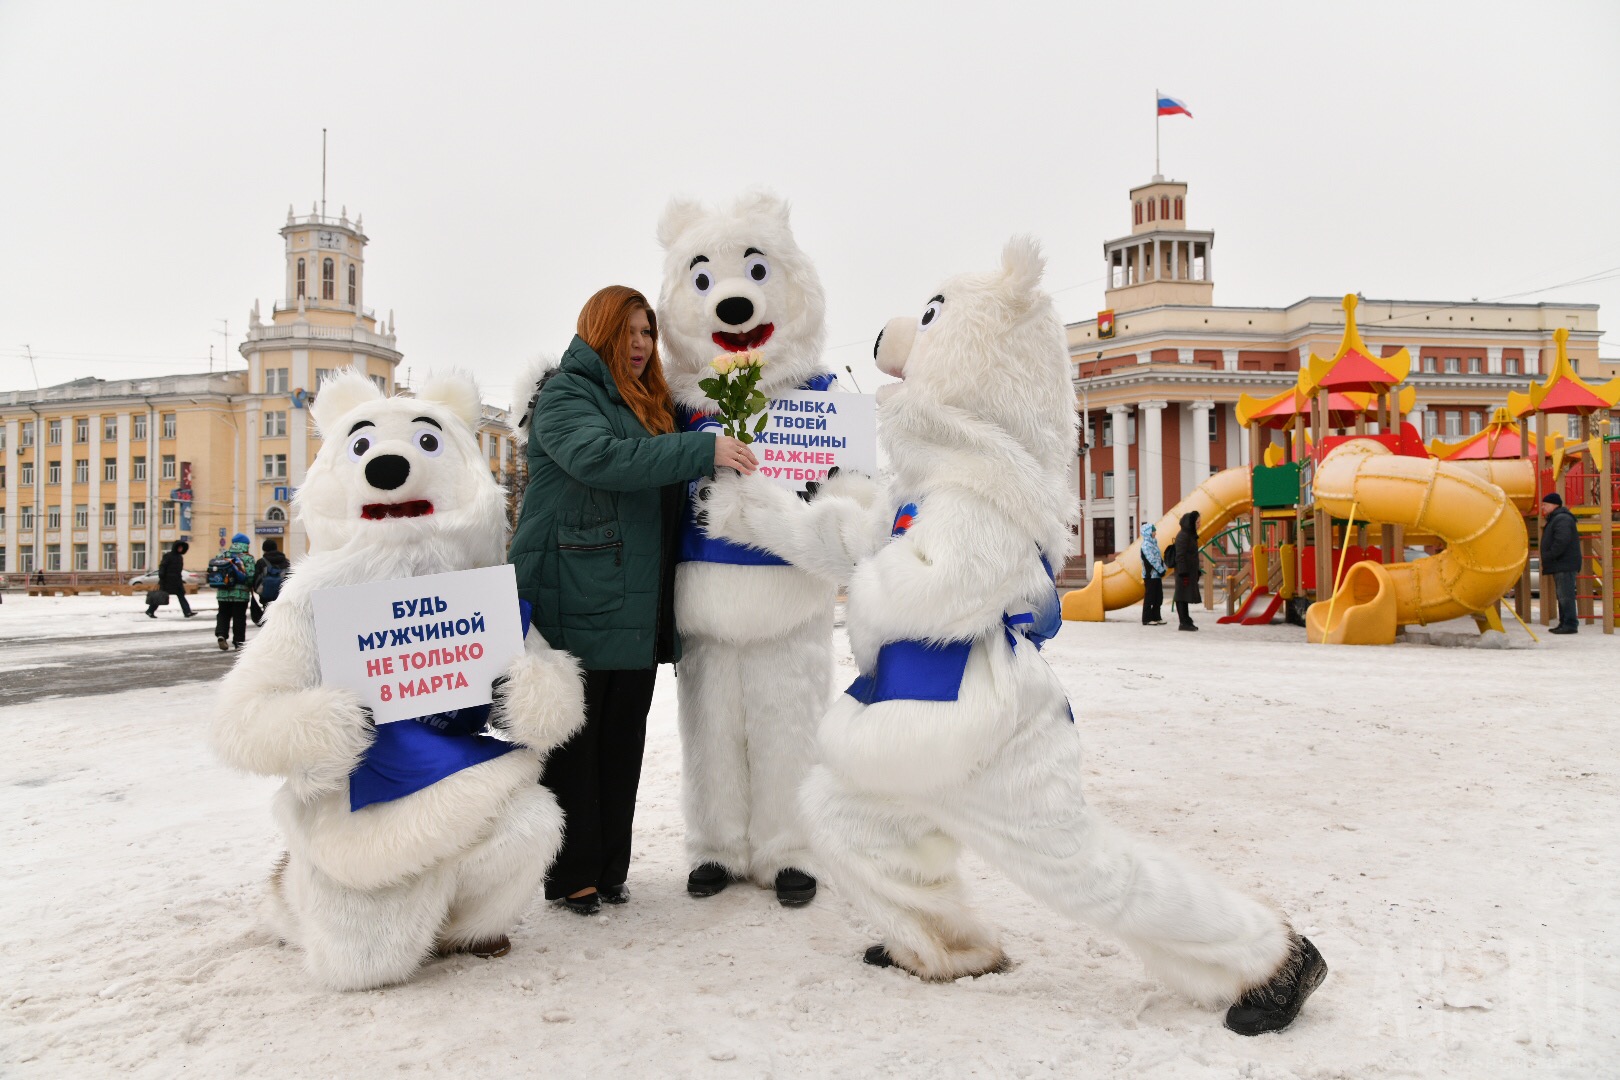 Заказать медведя поздравить. Большой медведь поздравляет с днем. Мишки поздравляют с днем рождения Москва. Большой надувной медведь для поздравления.